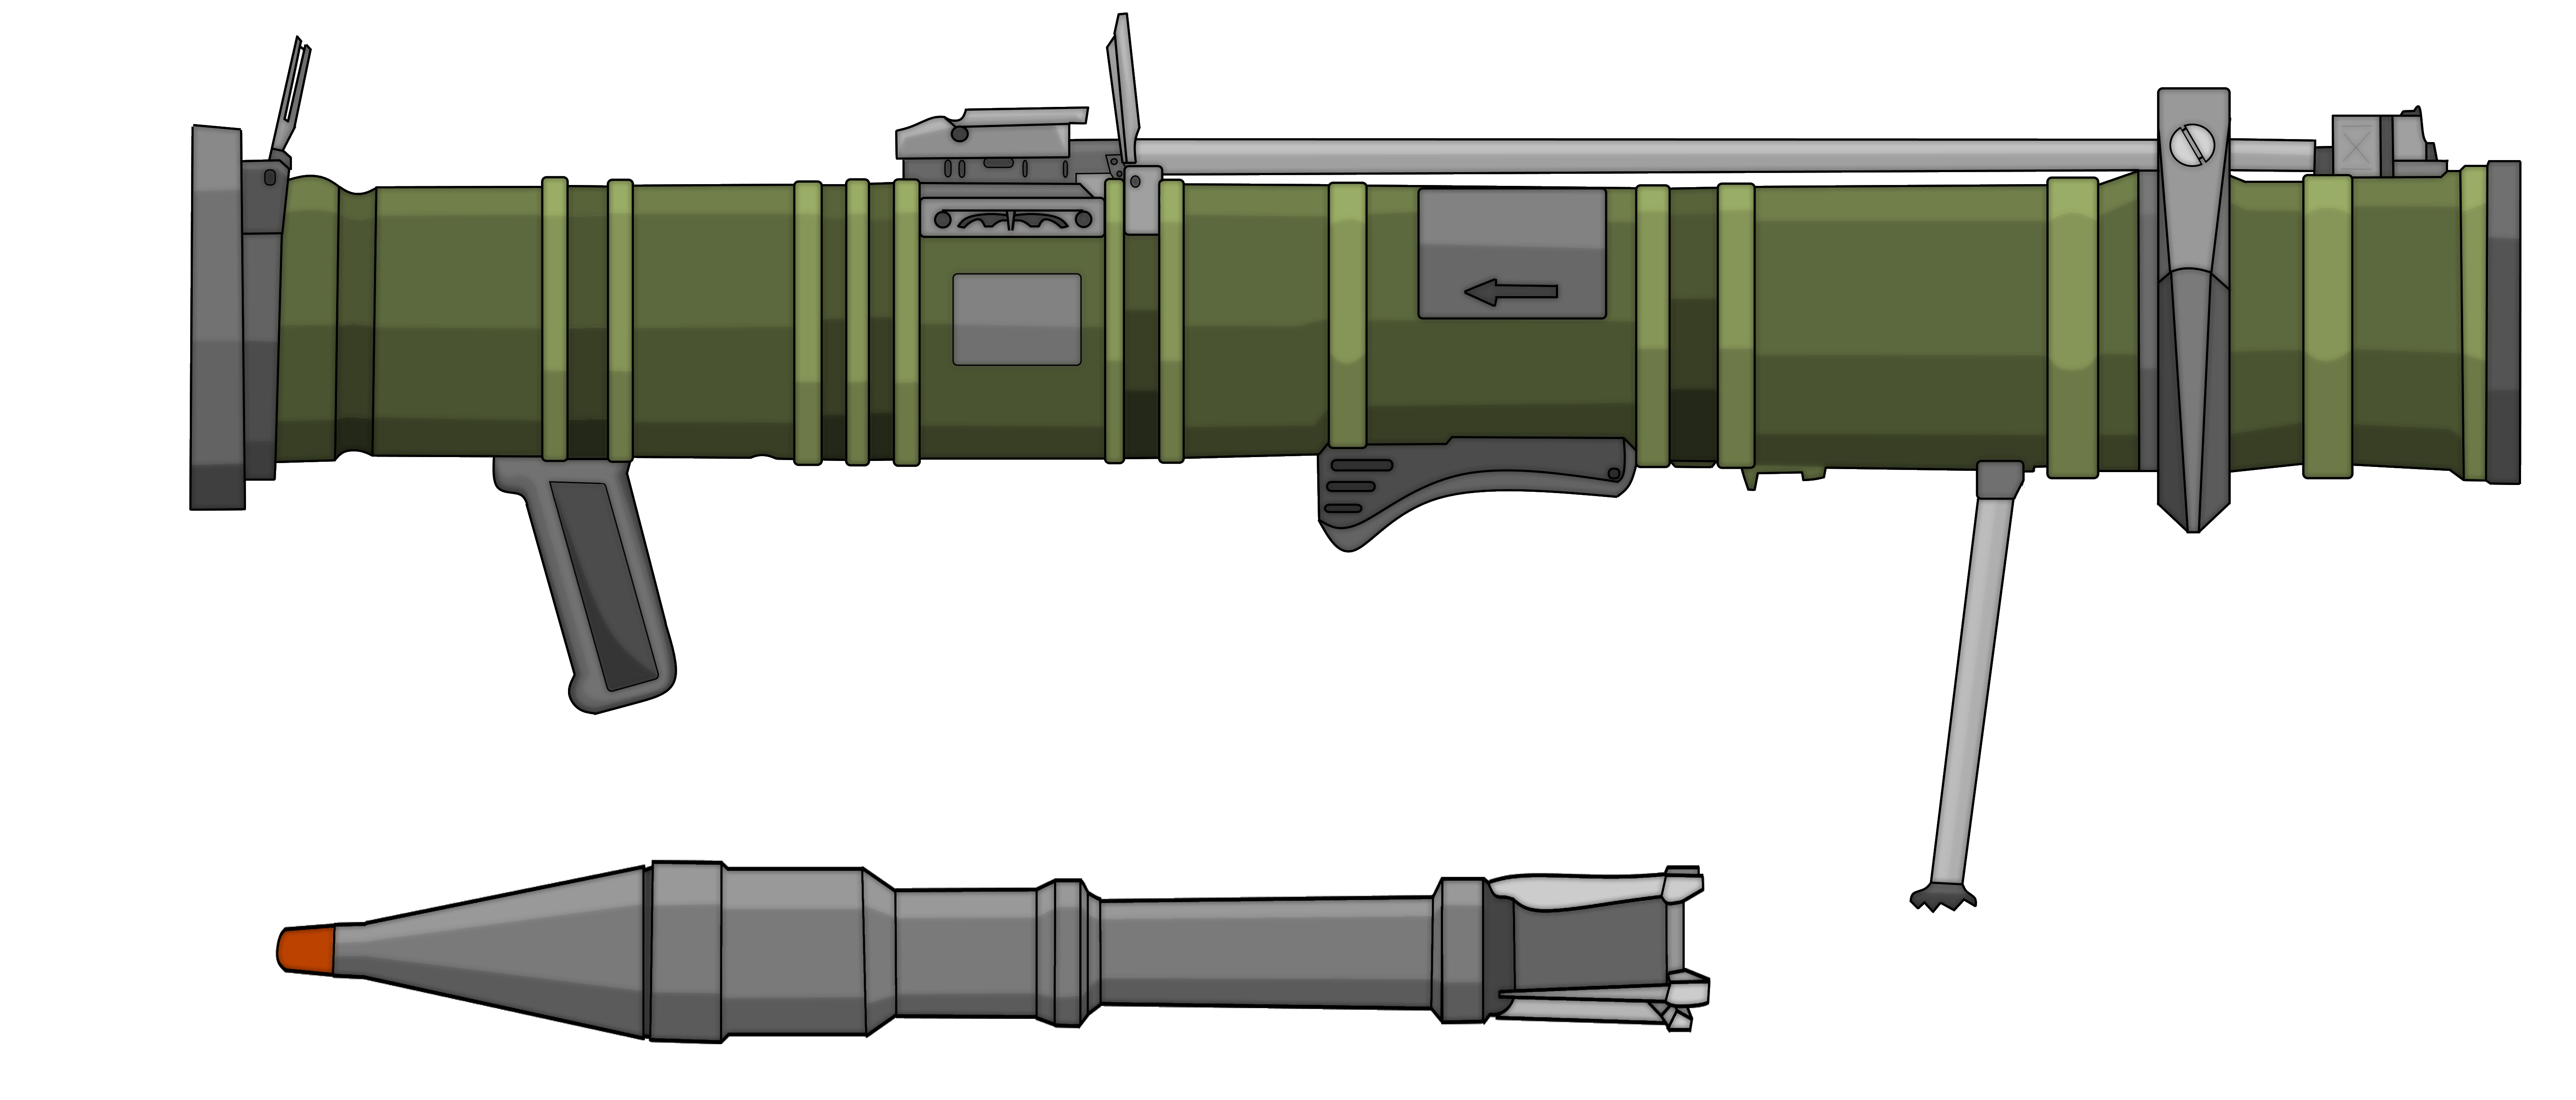 Rpg картинка. РПГ 7 базука. Гранатомет базука. РПГ-27 гранатомёт. РПГ-6 граната.